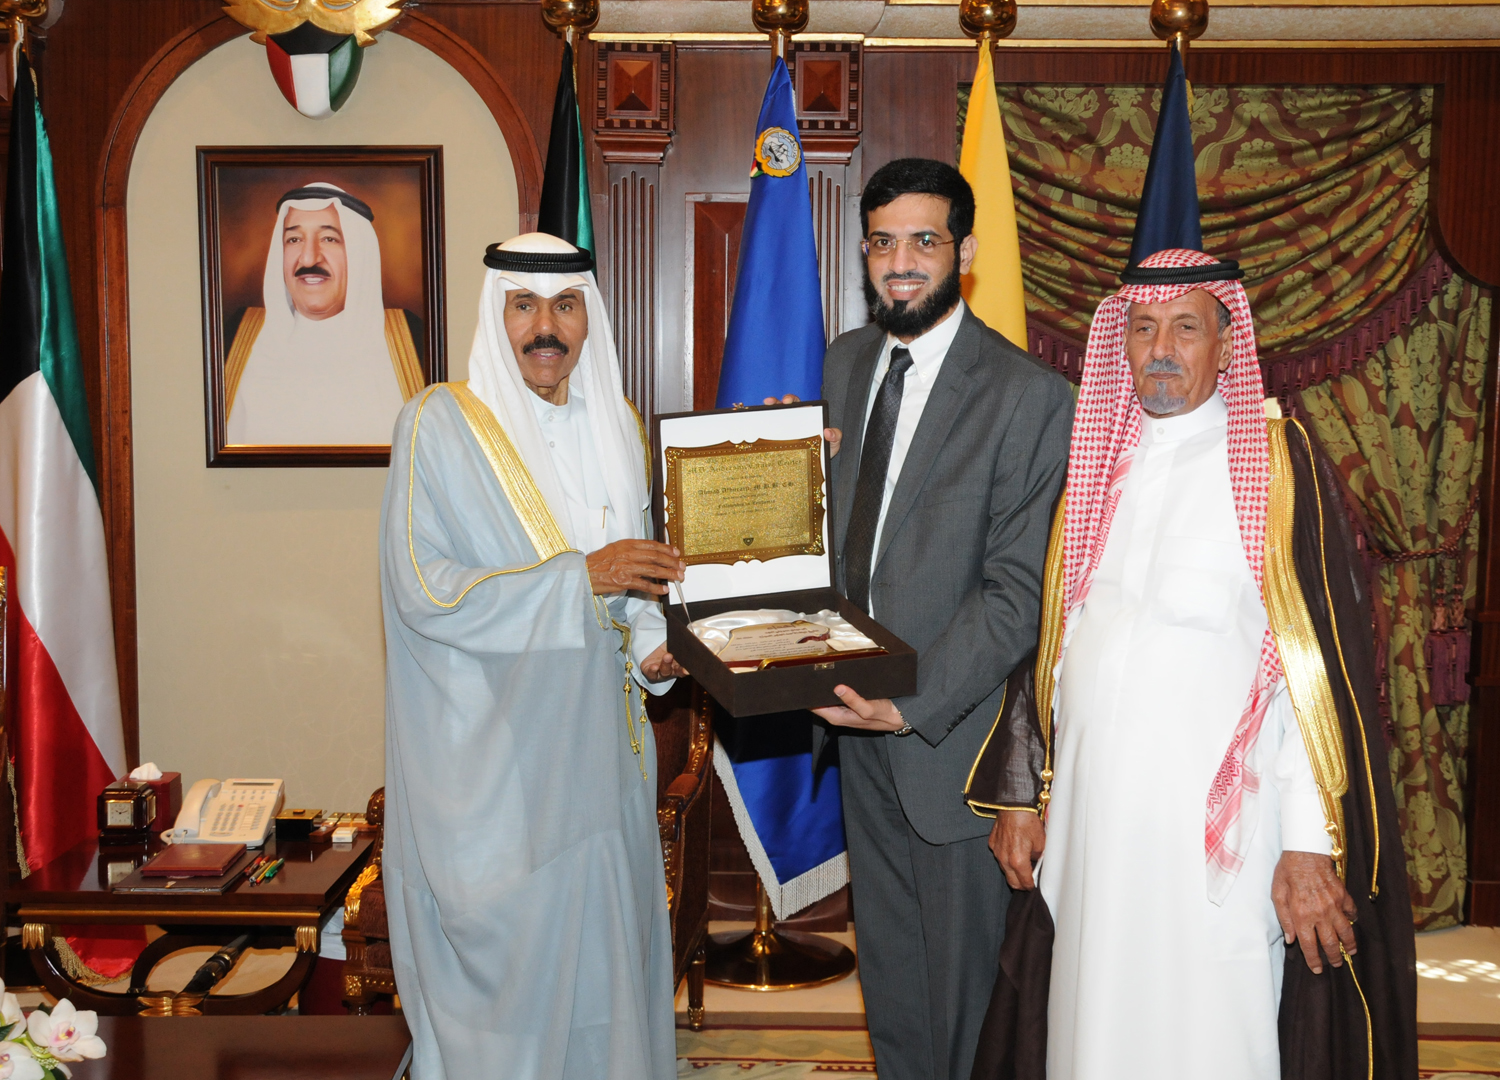 His Highness the Crown Prince Sheikh Nawaf Al-Ahmad Al-Jaber Al-Sabah receives Dr. Ahmad Al-Huraiji